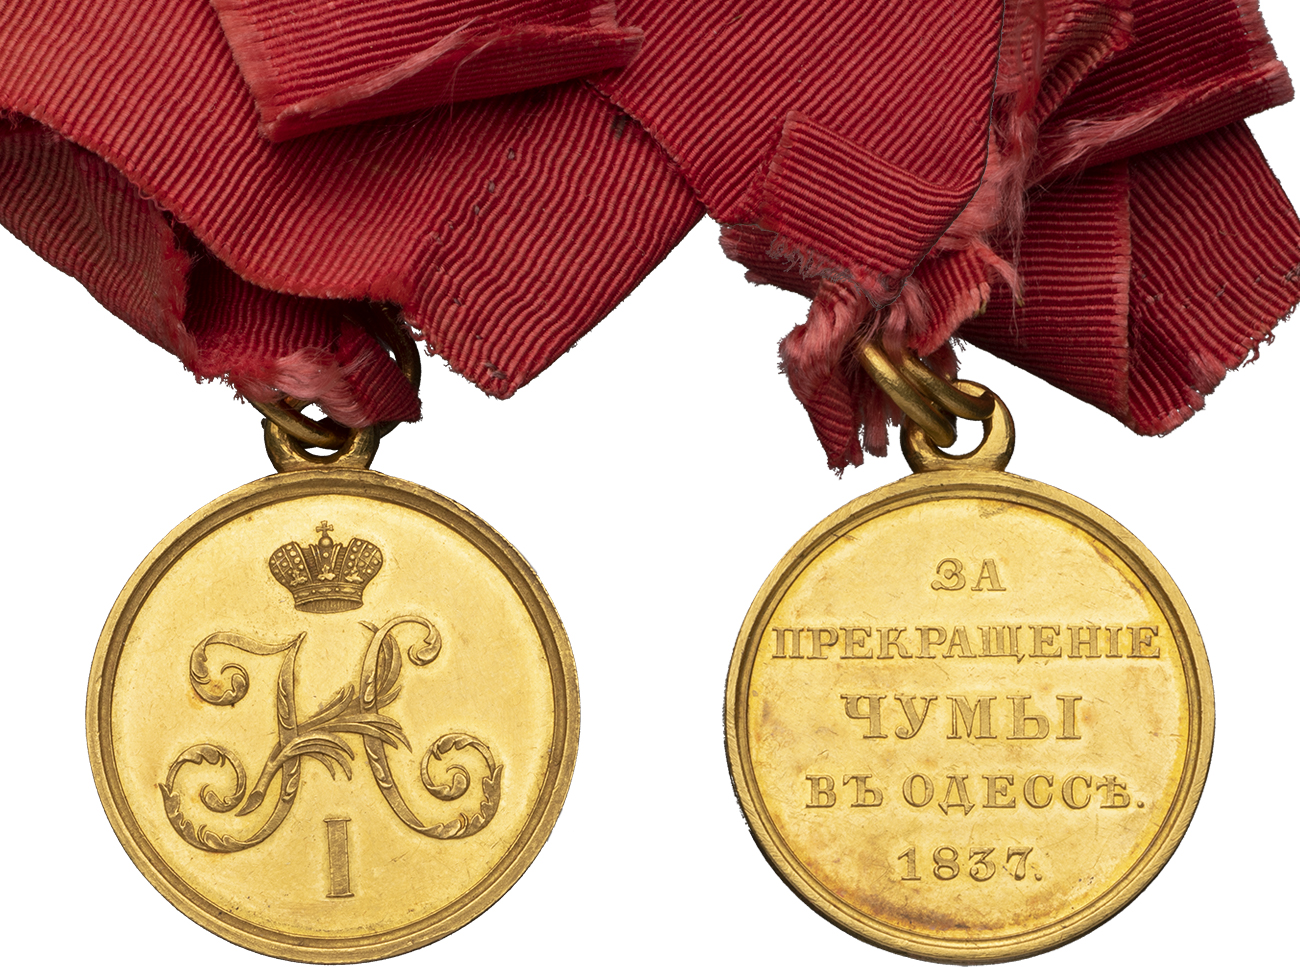 Медаль «За прекращение чумы в Одессе» на ленте ордена Св. Александра Невского